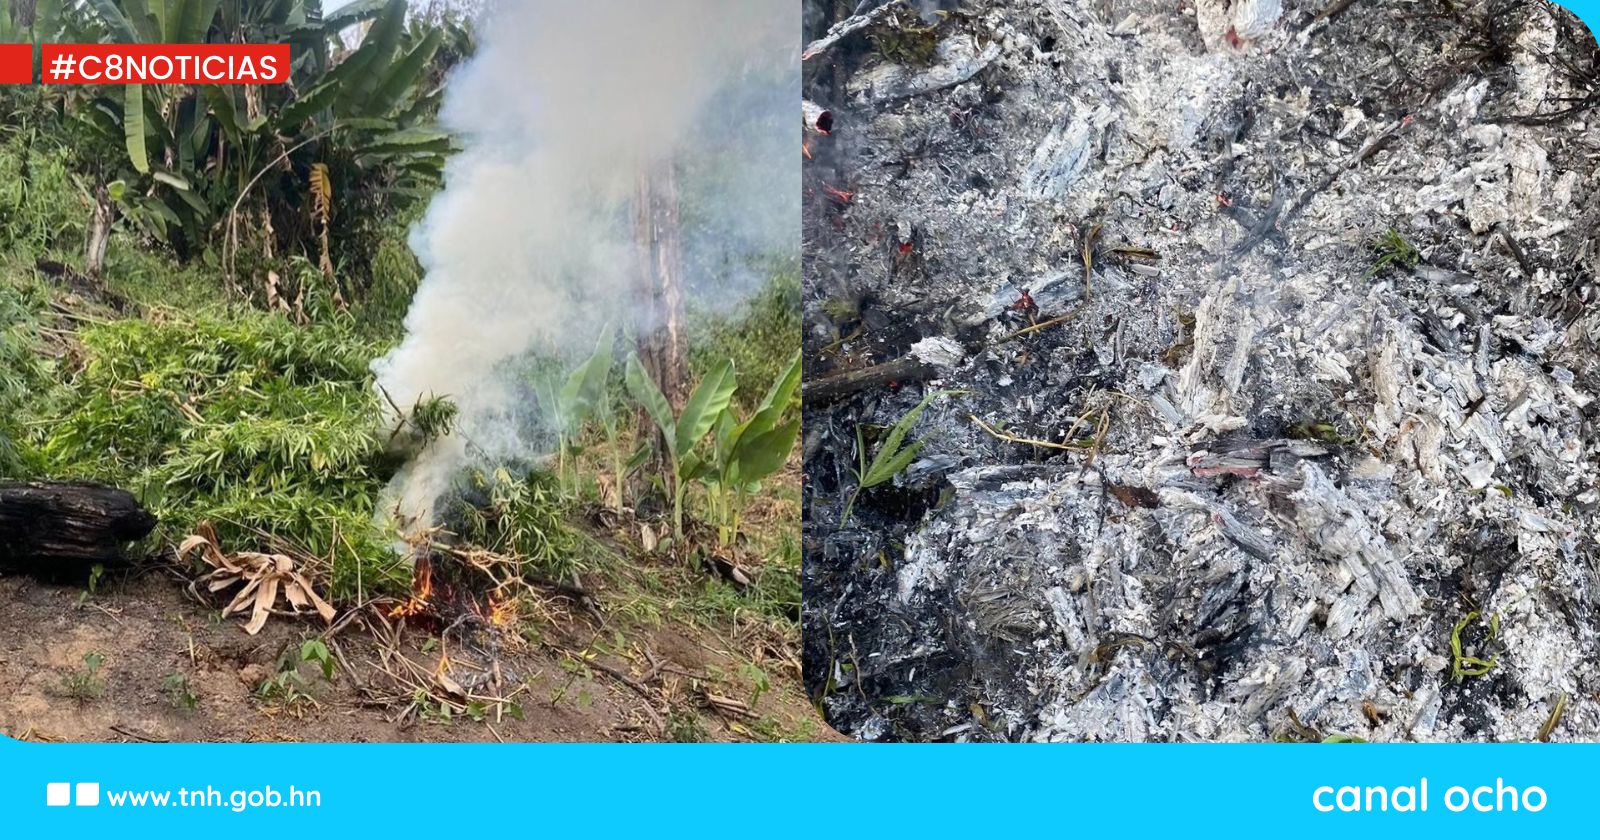 Incineran 40 mil arbustos de droga en Saba, Colón